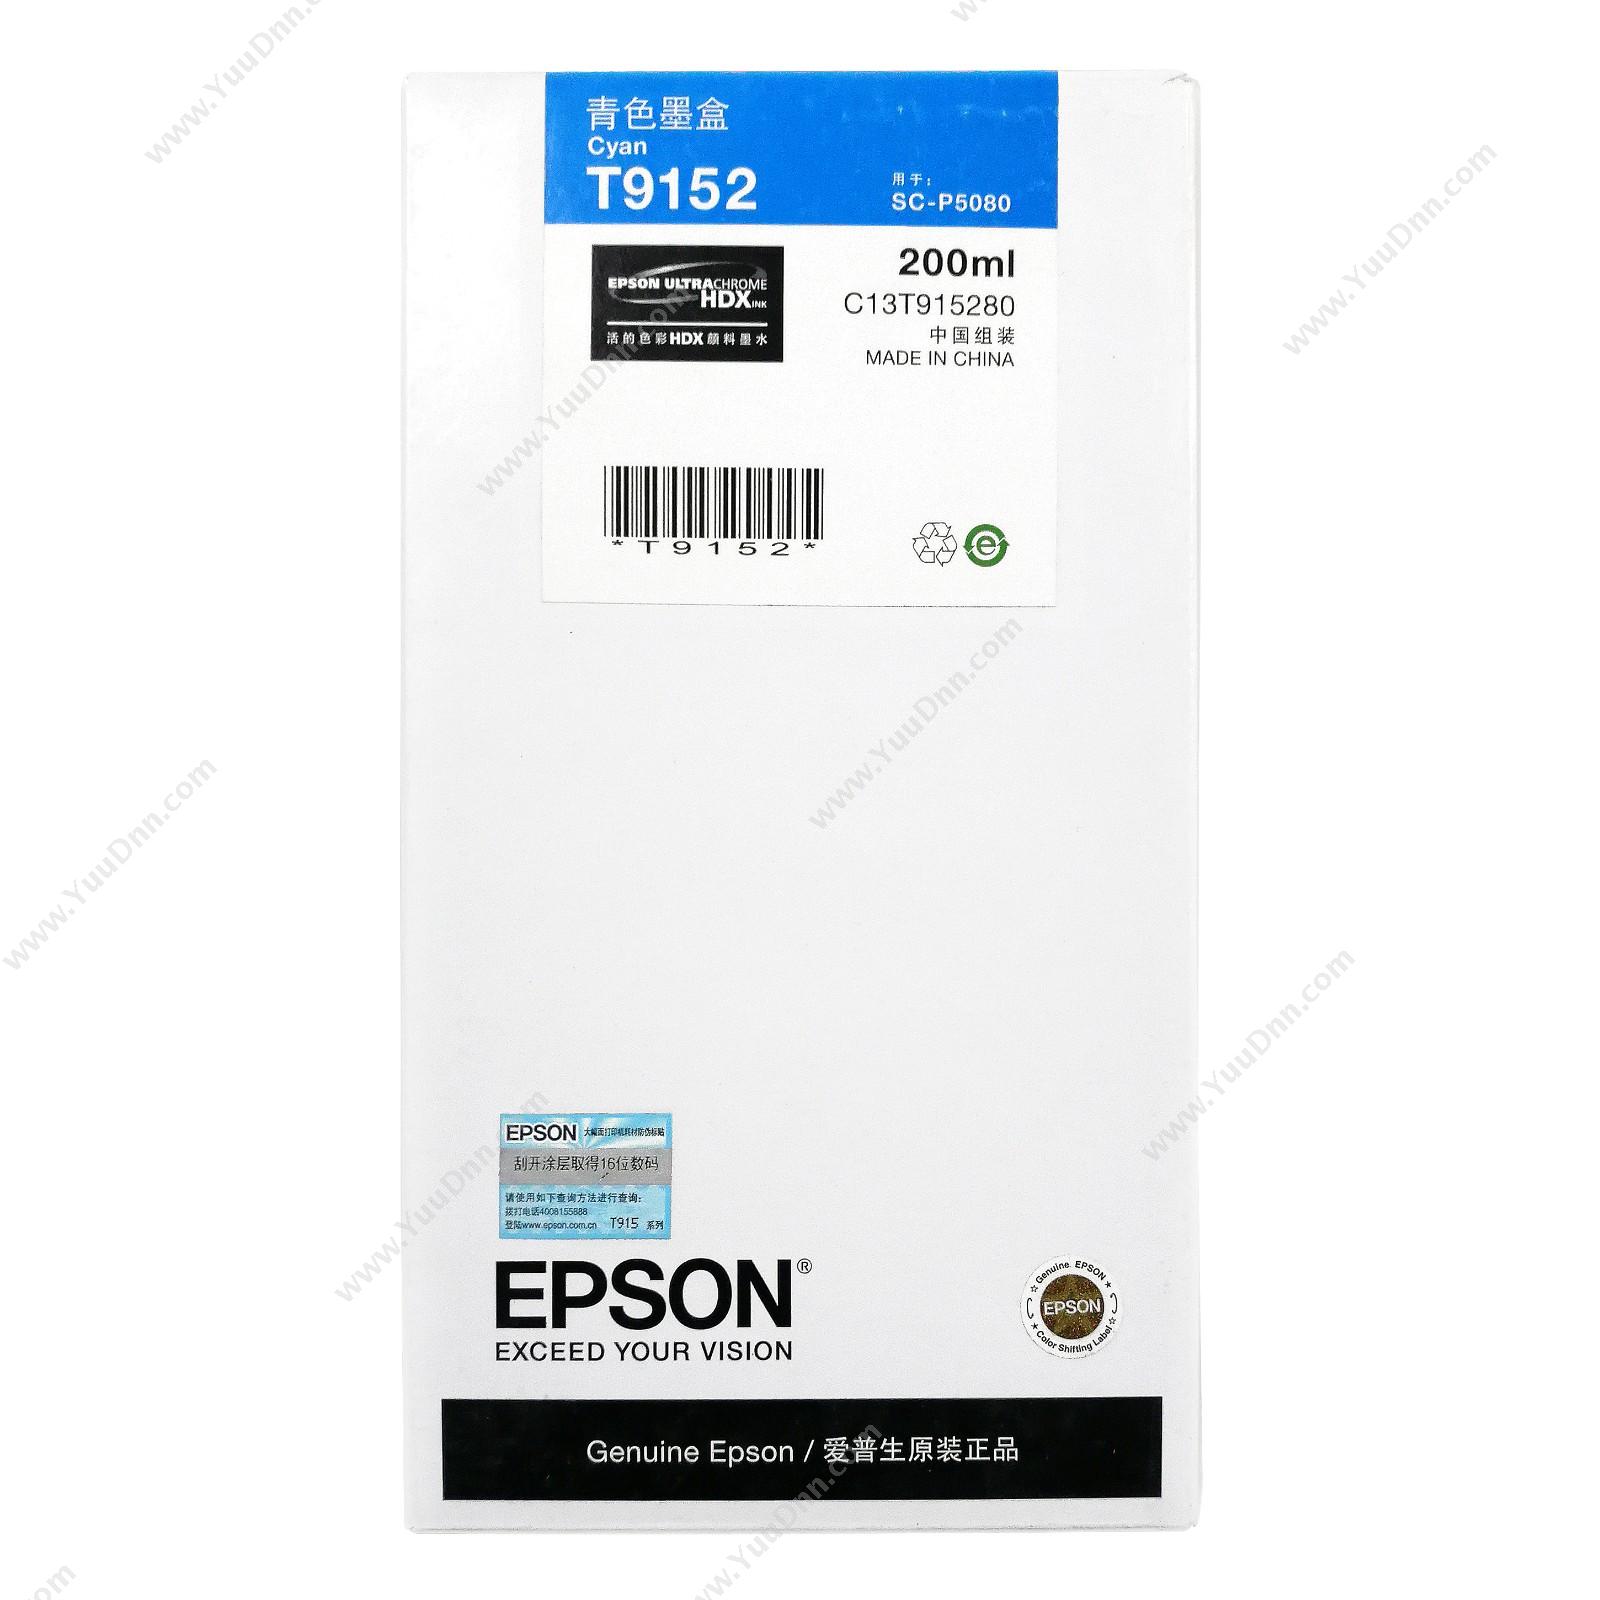 爱普生 EpsonP5080青色200ml(C13T915280)墨盒